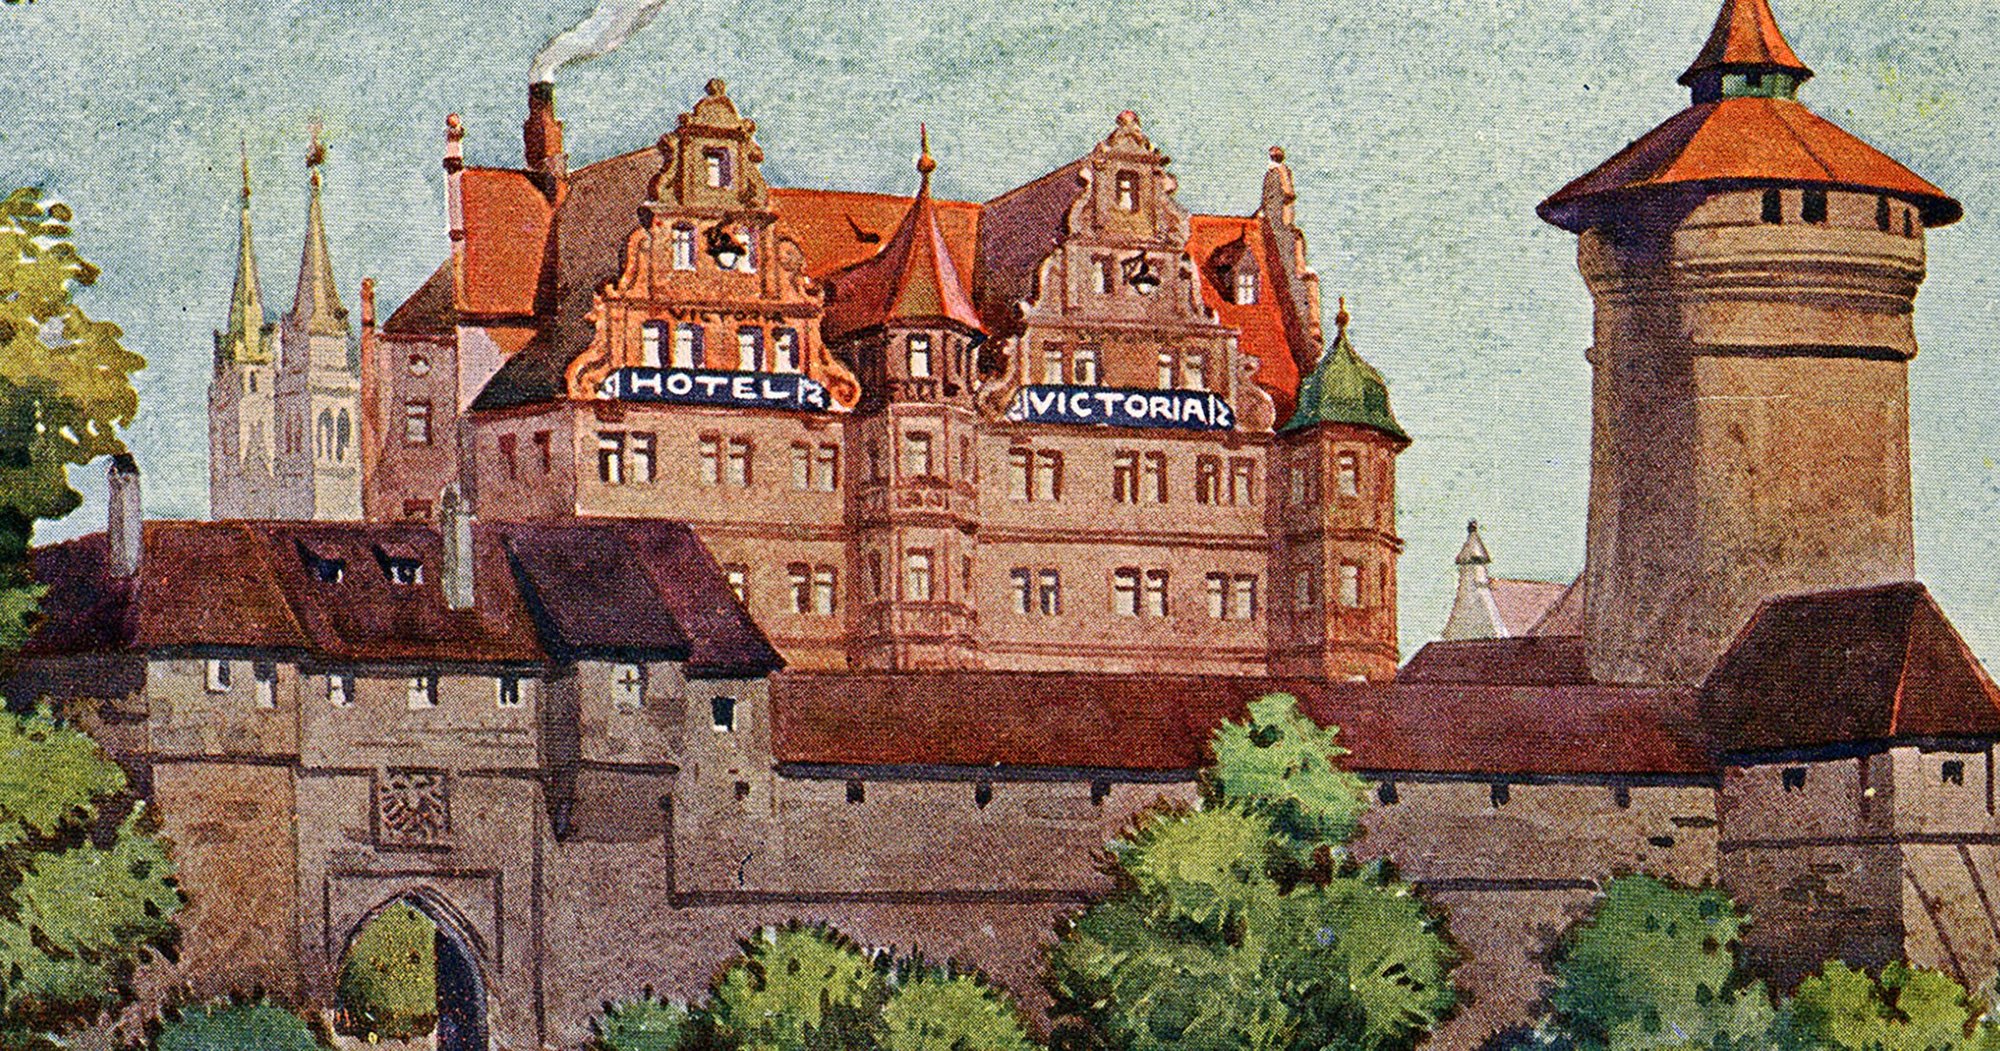 Ausschnitt eines historischen Postkartenmotivs des Hotel VICTORIA